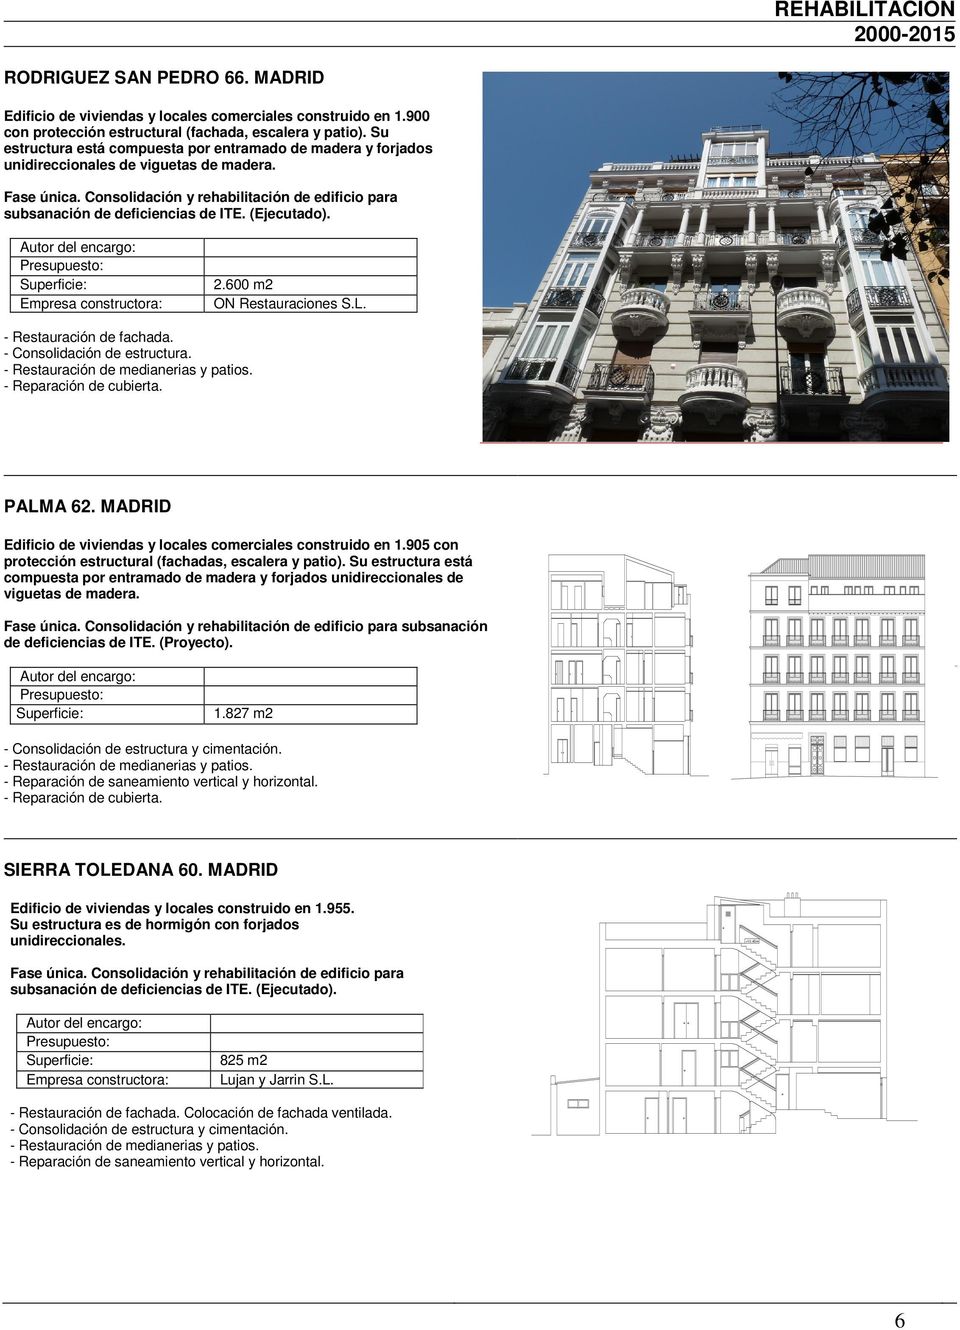 - onsolidación de estructura. - Restauración de medianerias y patios. - Reparación de cubierta. PALMA 62. MADRID 1.905 con protección estructural (fachadas, escalera y patio).